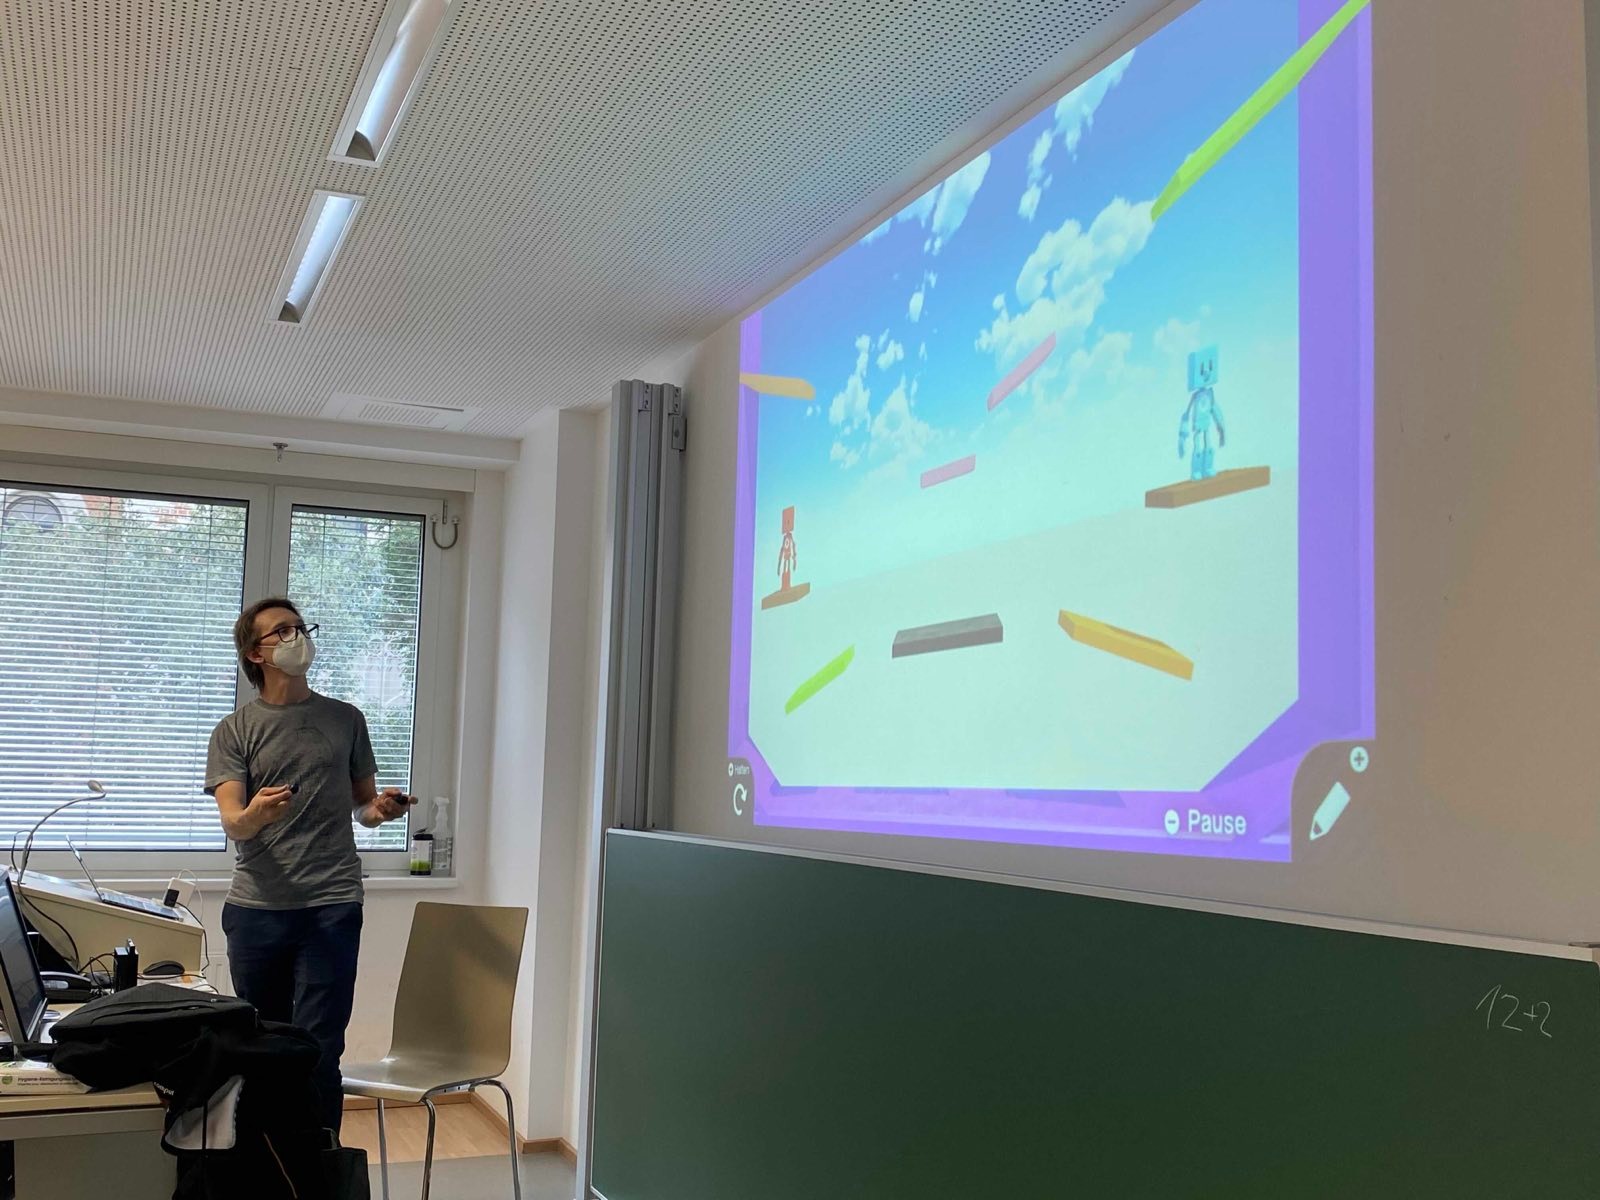 Foto einer Person vor der Projektionsleinwand eines Seminarraums der Universität Wien. Ein Mann hält zwei Nintendo-Switch-Controller in beiden Händen und gestikuliert vor der Projektionsleinwand. Projiziert wird ein Beispiel-Level.